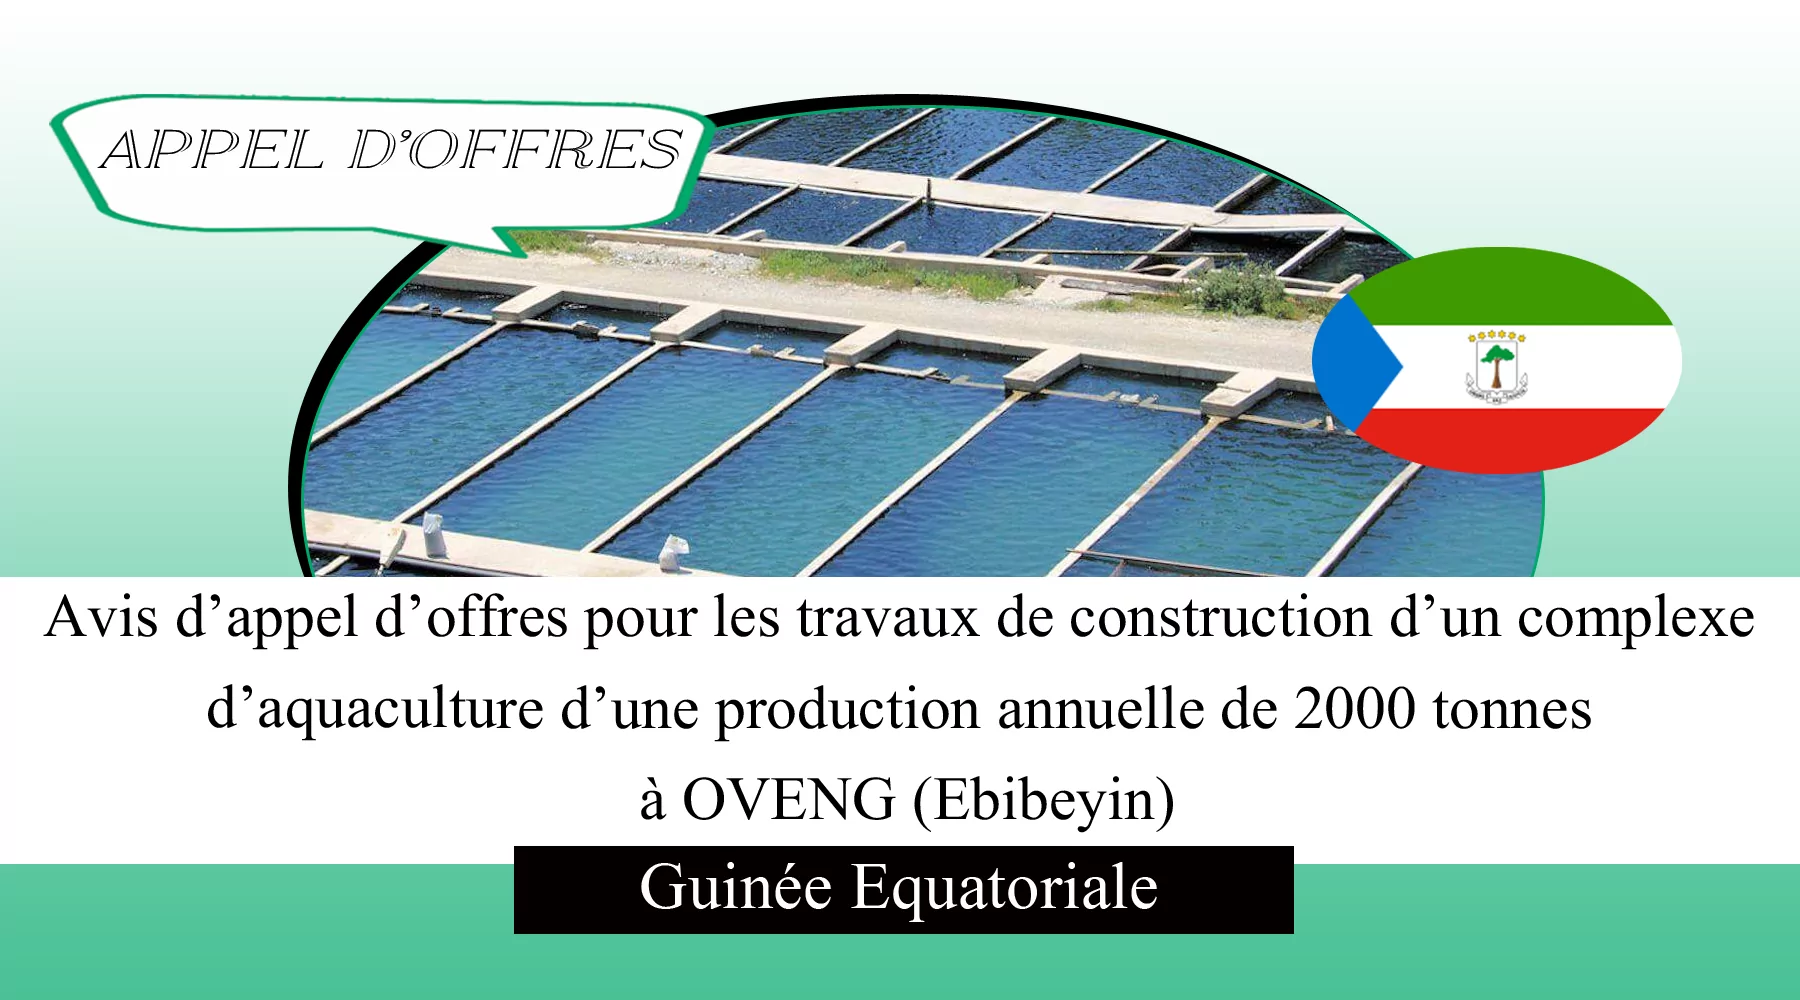 Avis d’appel d’offres pour les travaux de construction d’une unité de conservation, de transformation et de vente de poisson à KIE-OSI (Ebibeyin), Guinée Equatoriale